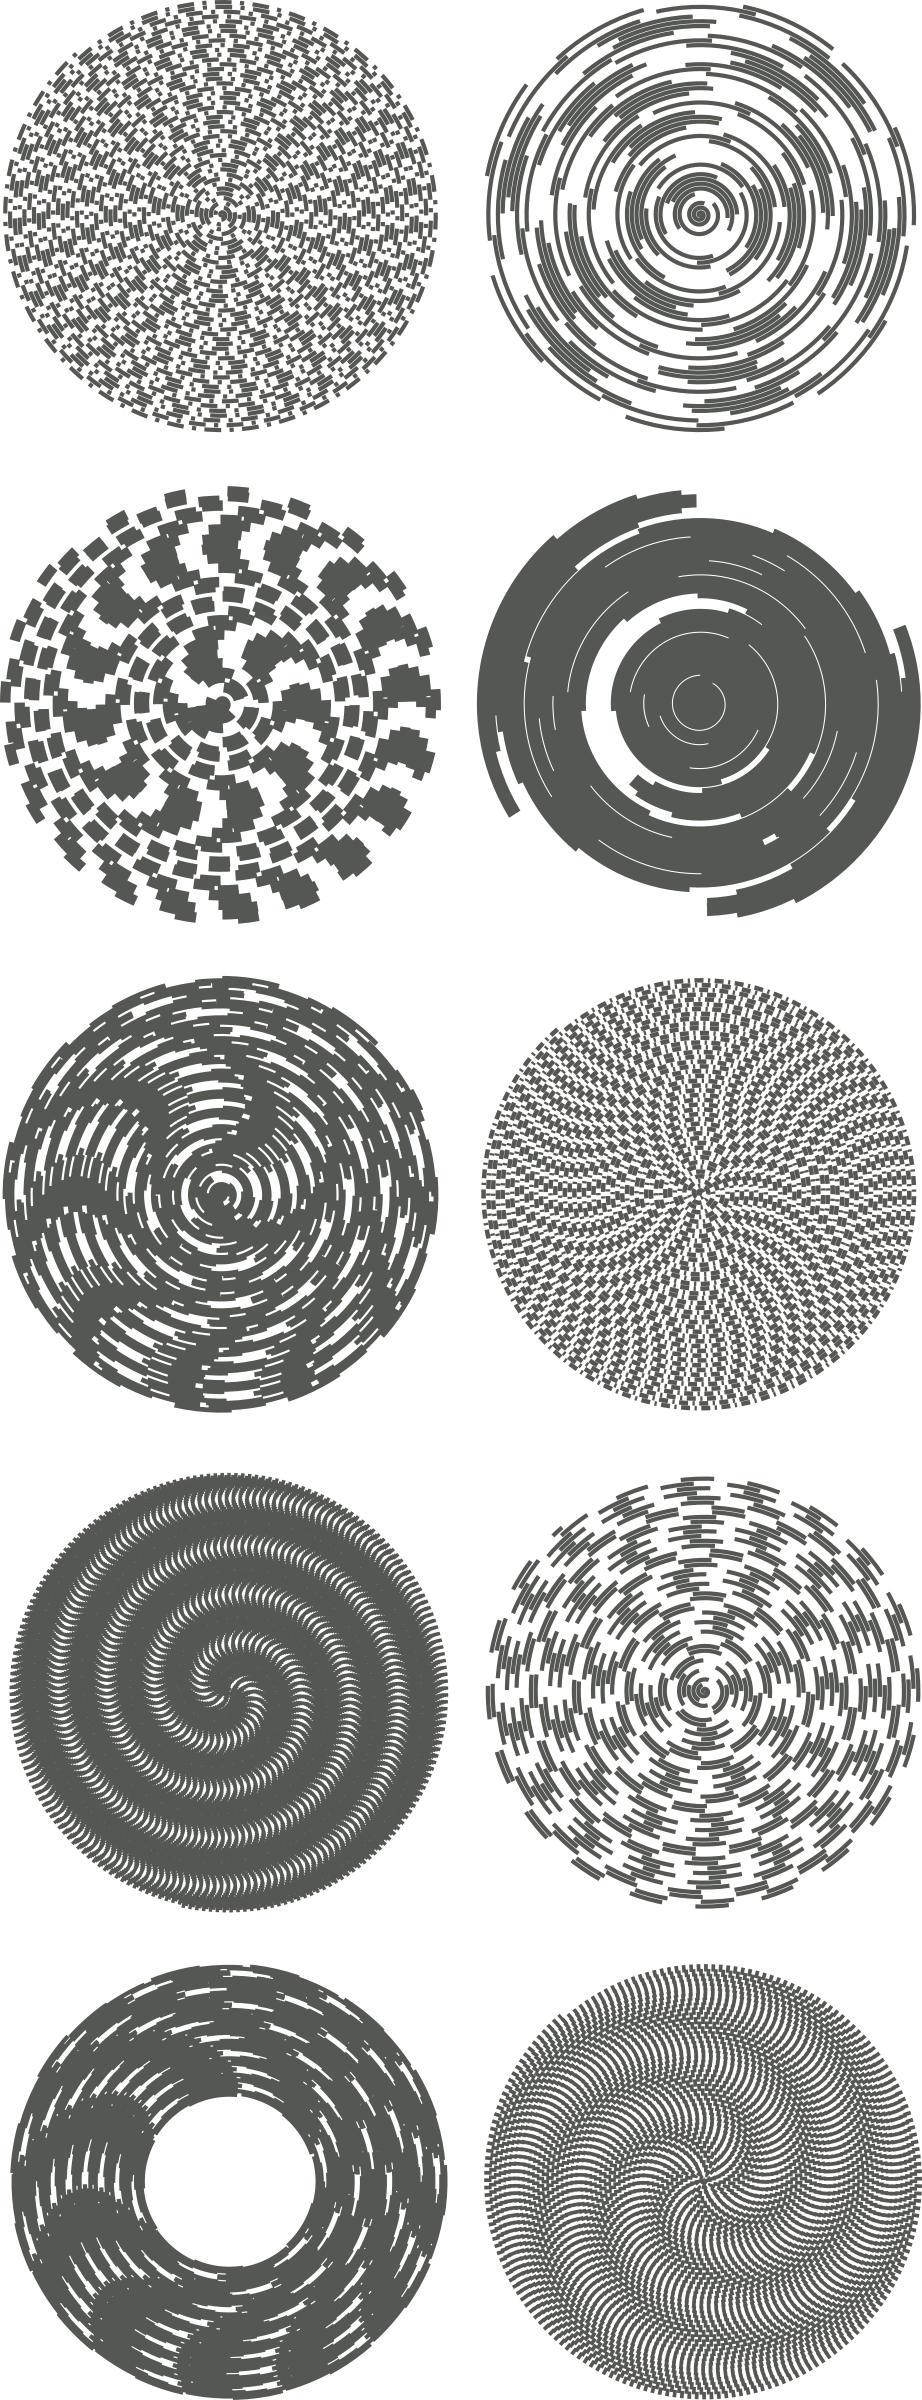 spiral designs png transparent